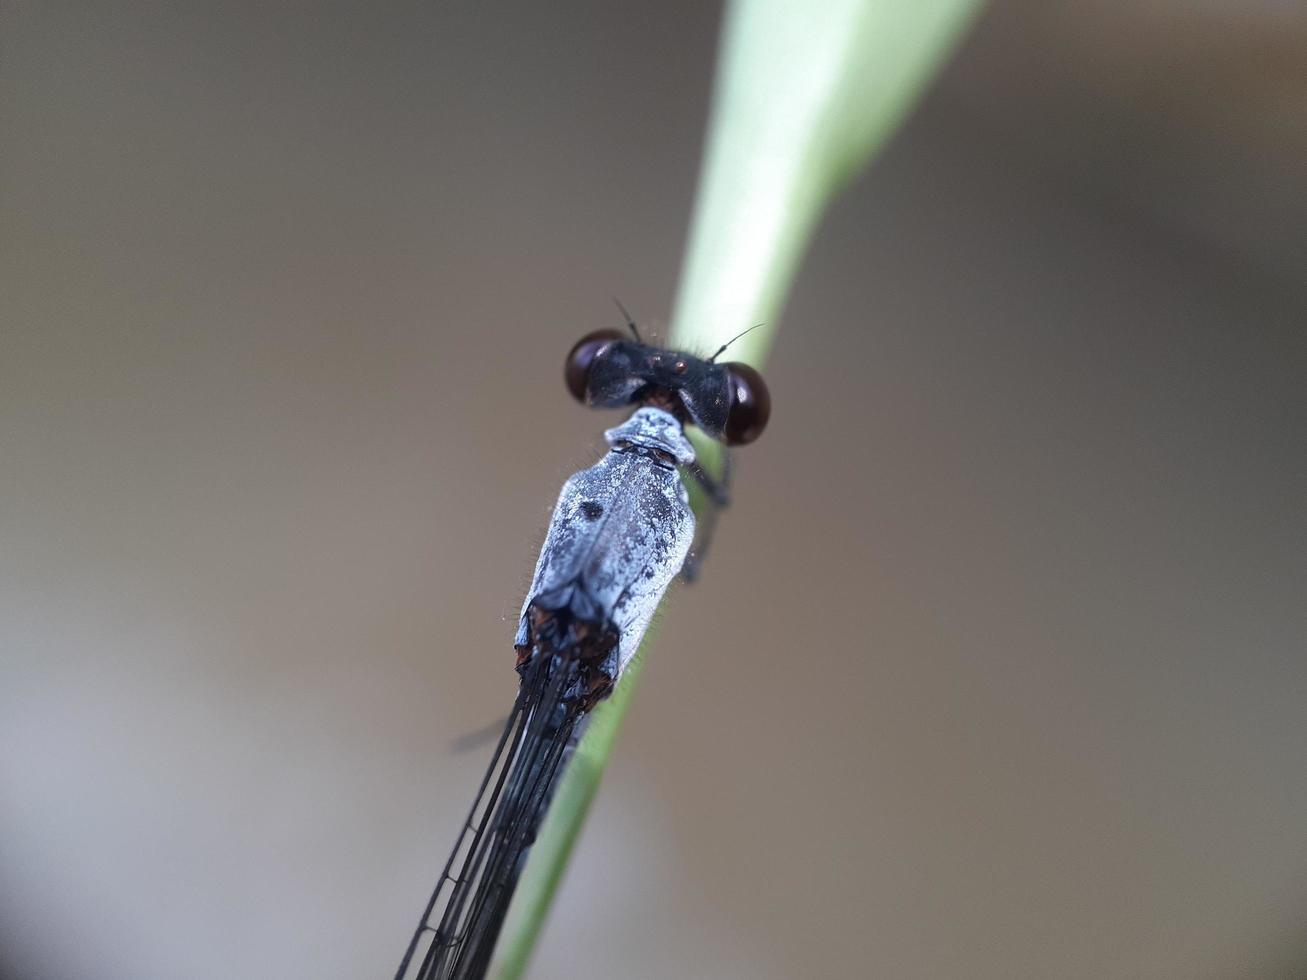 närbild av insekt på bladet med oskärpa bakgrund foto